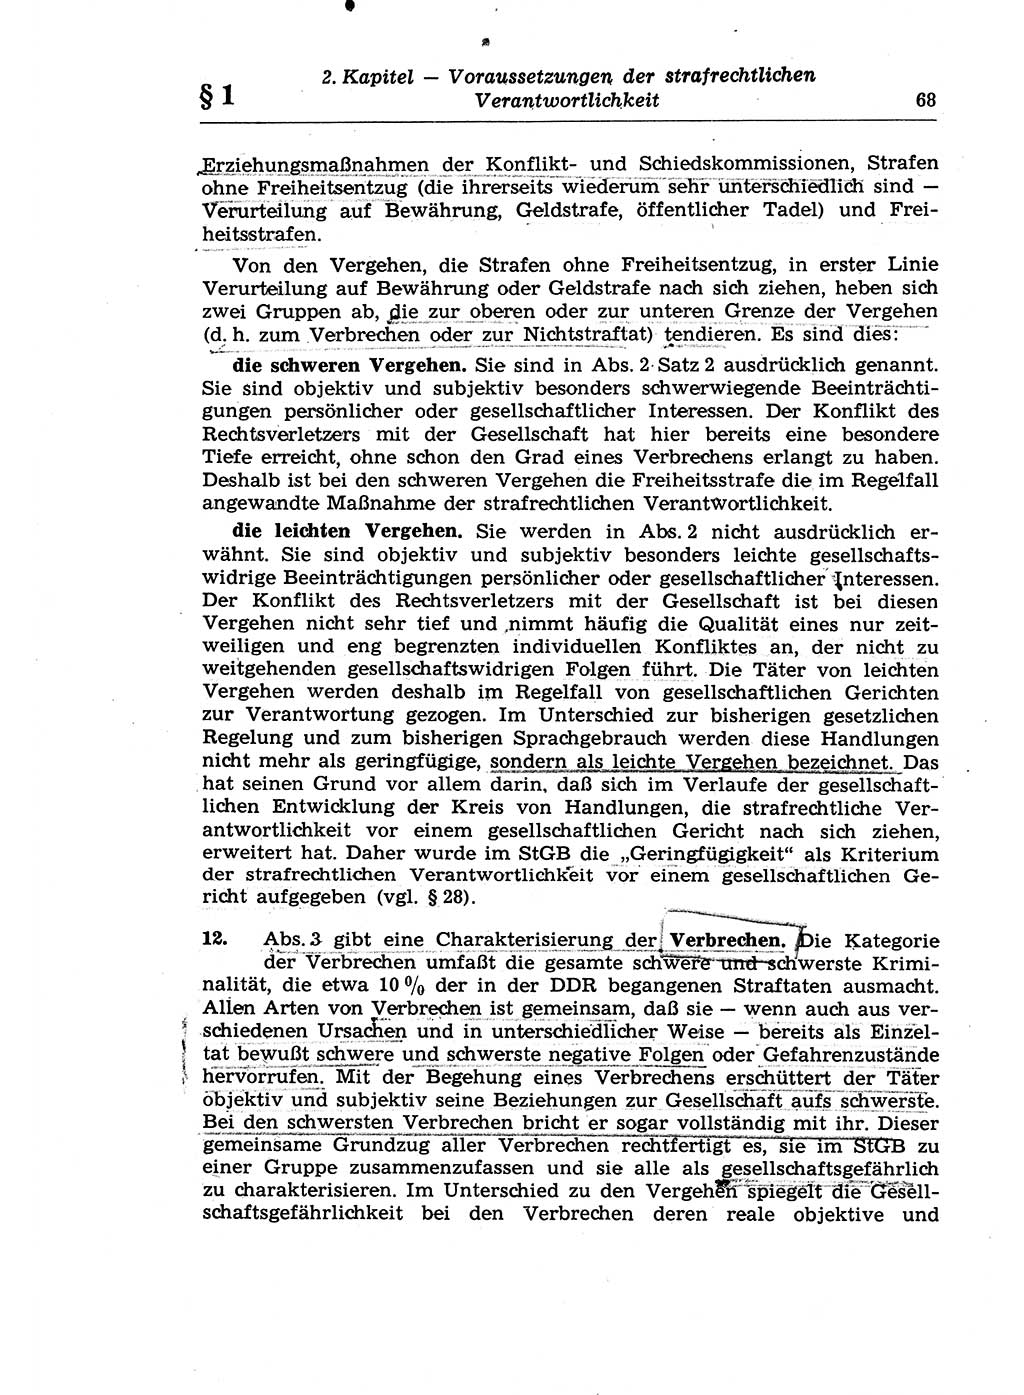 Strafrecht der Deutschen Demokratischen Republik (DDR), Lehrkommentar zum Strafgesetzbuch (StGB), Allgemeiner Teil 1970, Seite 68 (Strafr. DDR Lehrkomm. StGB AT 1970, S. 68)